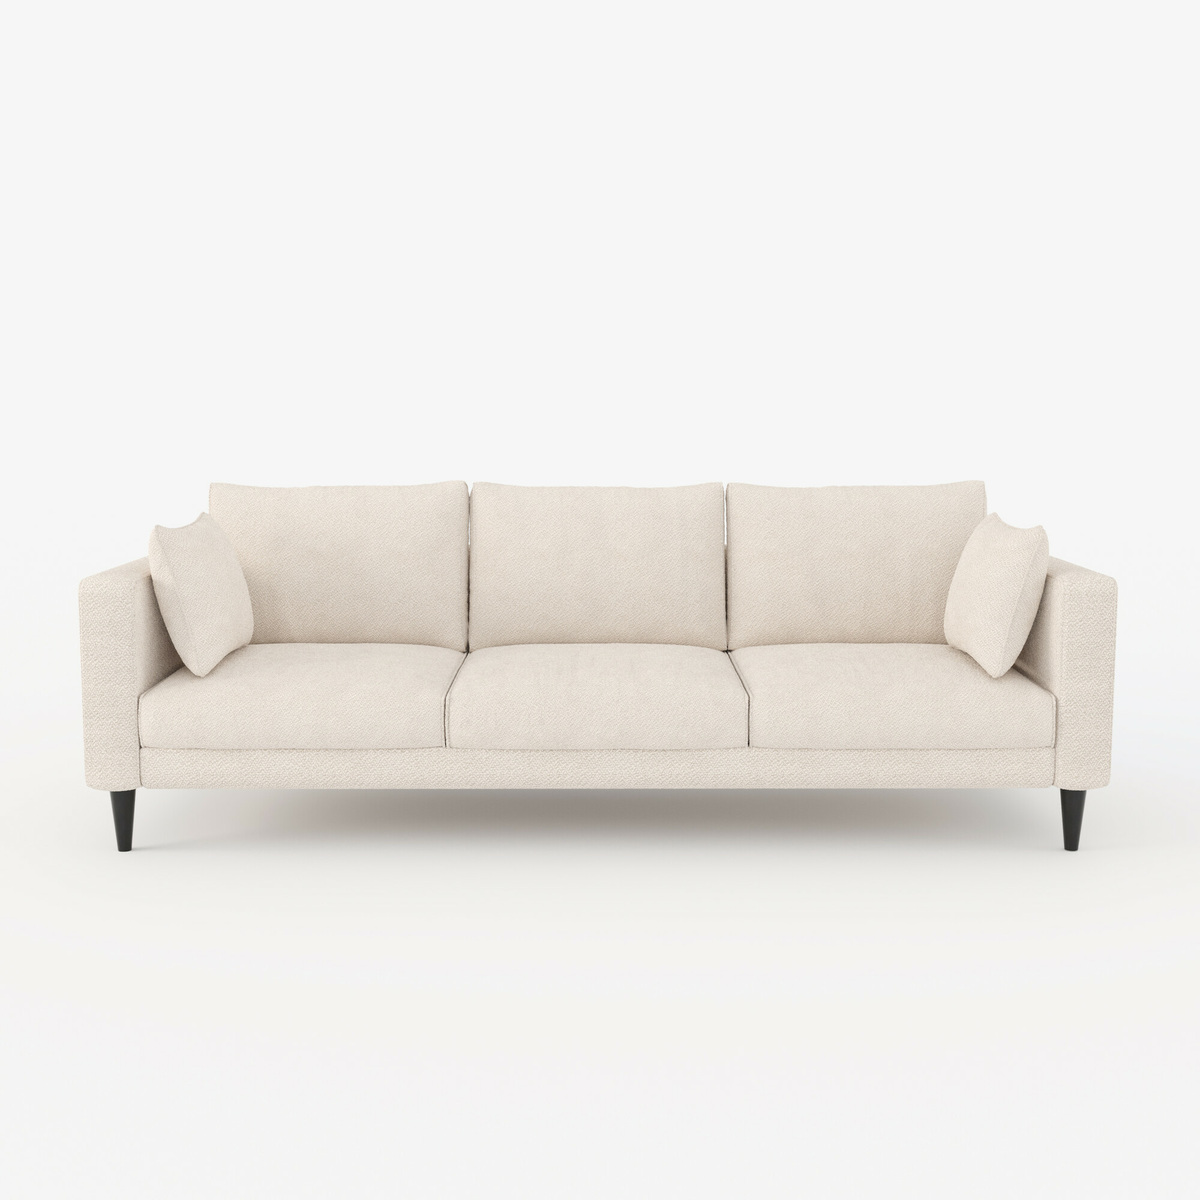 Sofa Noa, Wood - L230 x P90 x H80 cm - image 1